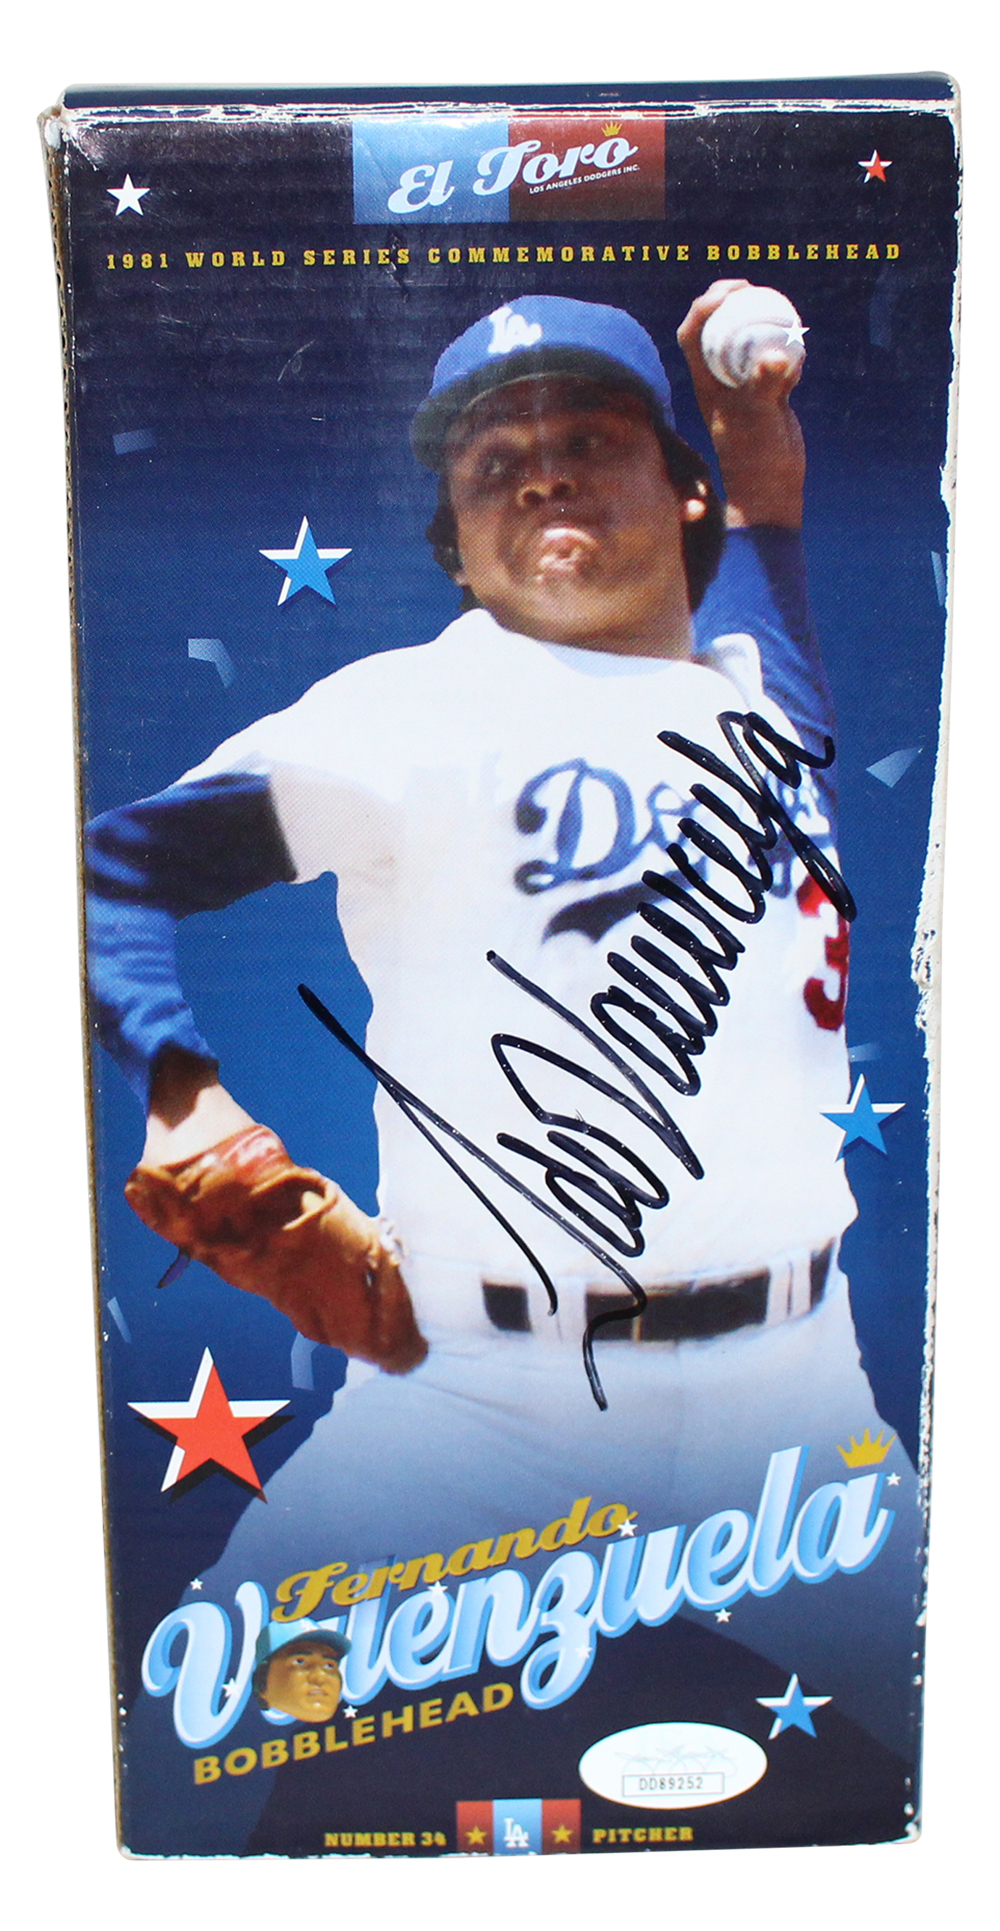 Fernando Valenzuela Autographed/Signed Los Angeles Dodgers Bobblehead JSA 20211 Denver Autographs